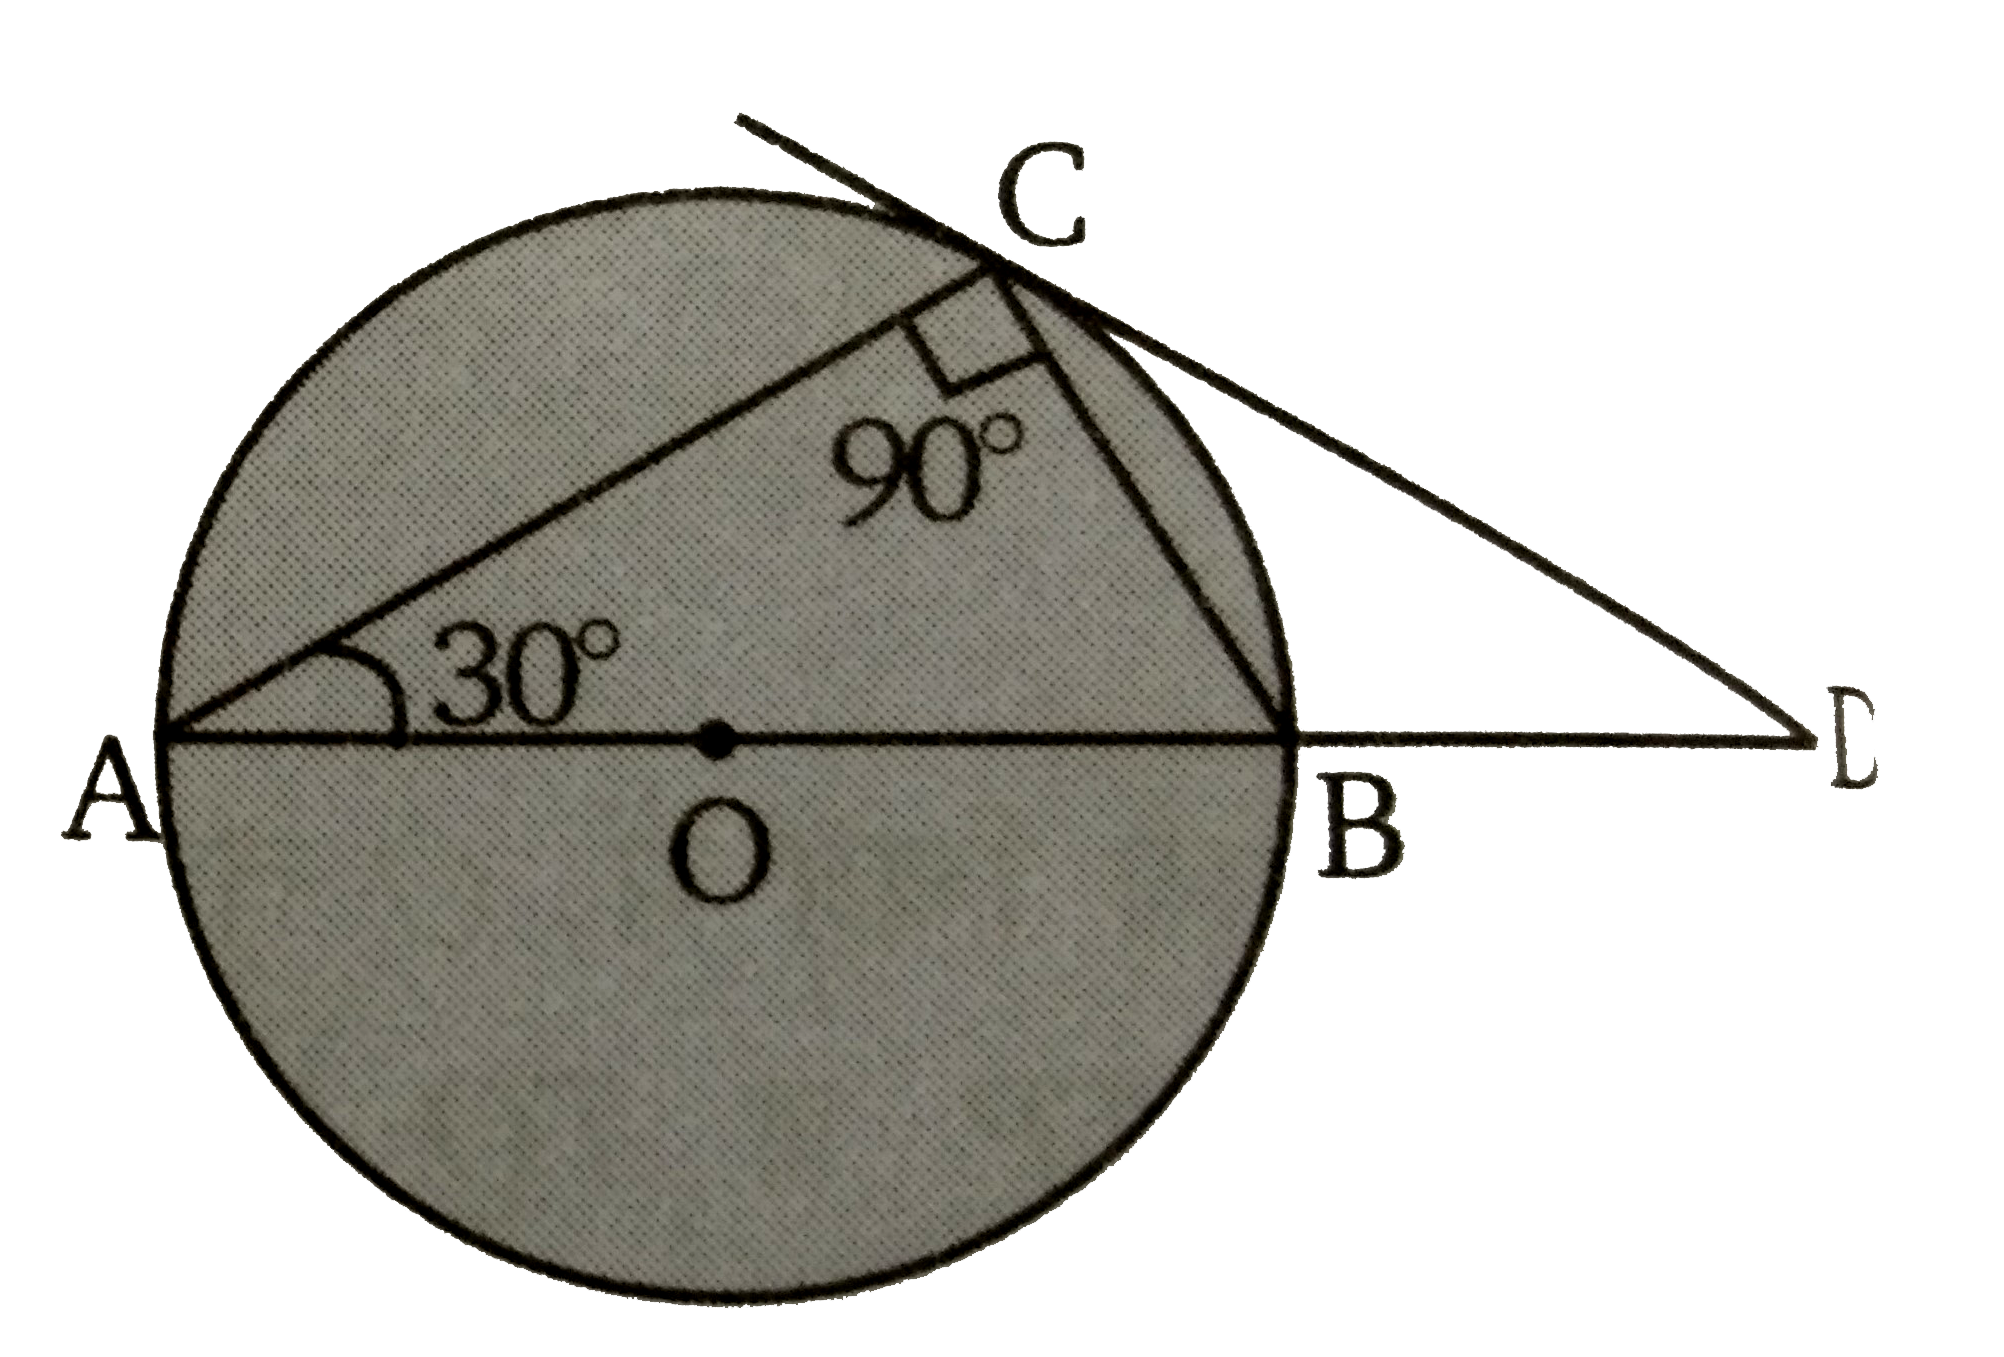 दिये गये चित्र में,  AB वृत्त का व्यास तथा AC  वृत्त की जीवा है तथा  angle BAC = 30^(@)  बिन्दु  C पर स्पर्शी AB  को बढ़ाने पर मिले बिन्दु  D  पर प्रतिच्छेद  करती है। सिद्ध कीजिए कि BC = BD